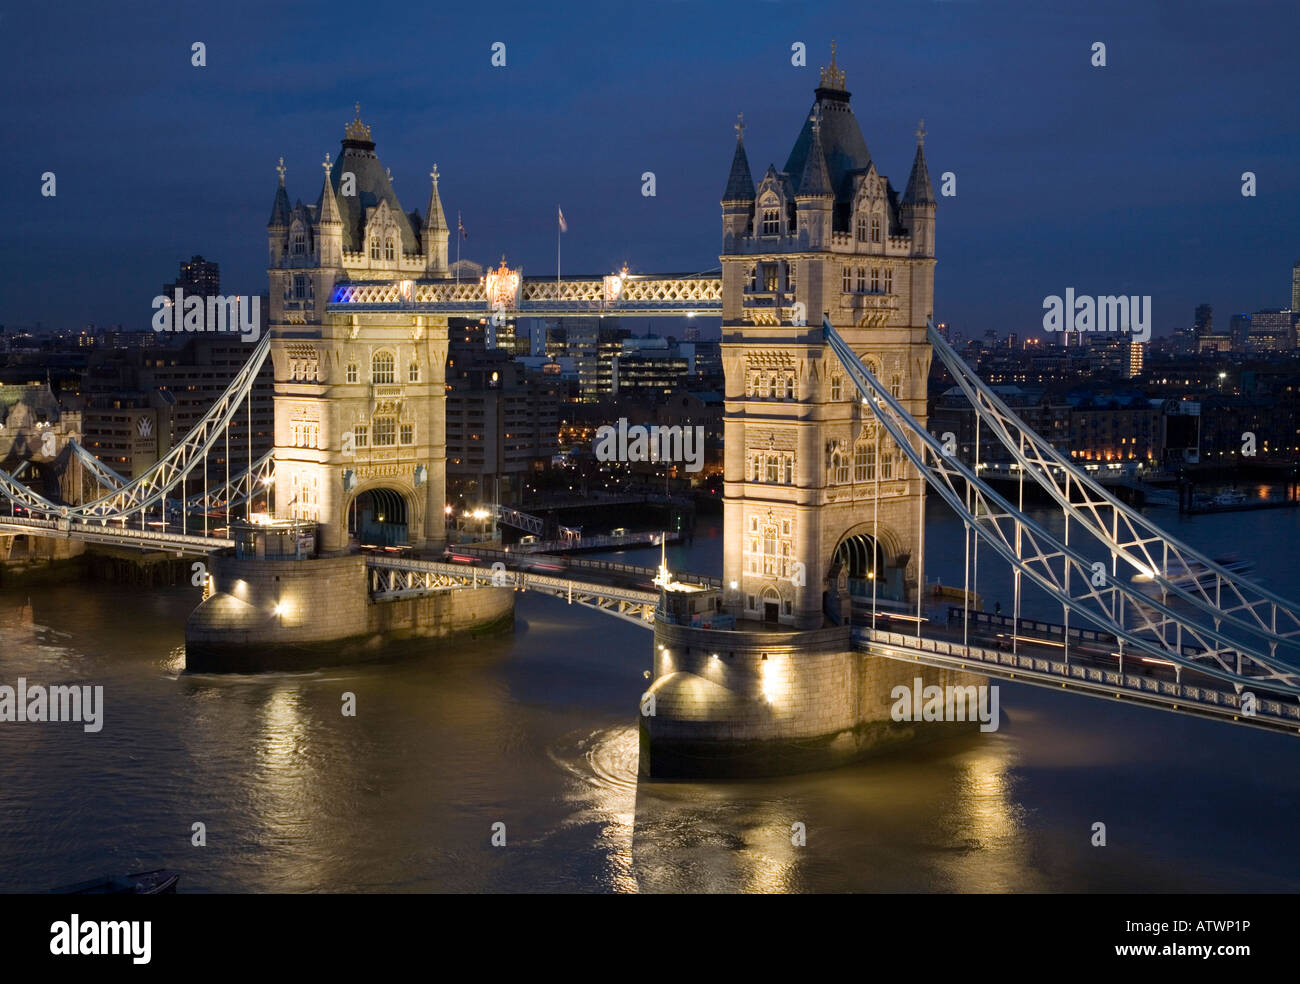 Am Abend und in der Nacht können Sie die Tower Bridge fotografieren, die sich über die Themse zwischen Southwark und der City of London, Großbritannien, erstreckt. Stockfoto